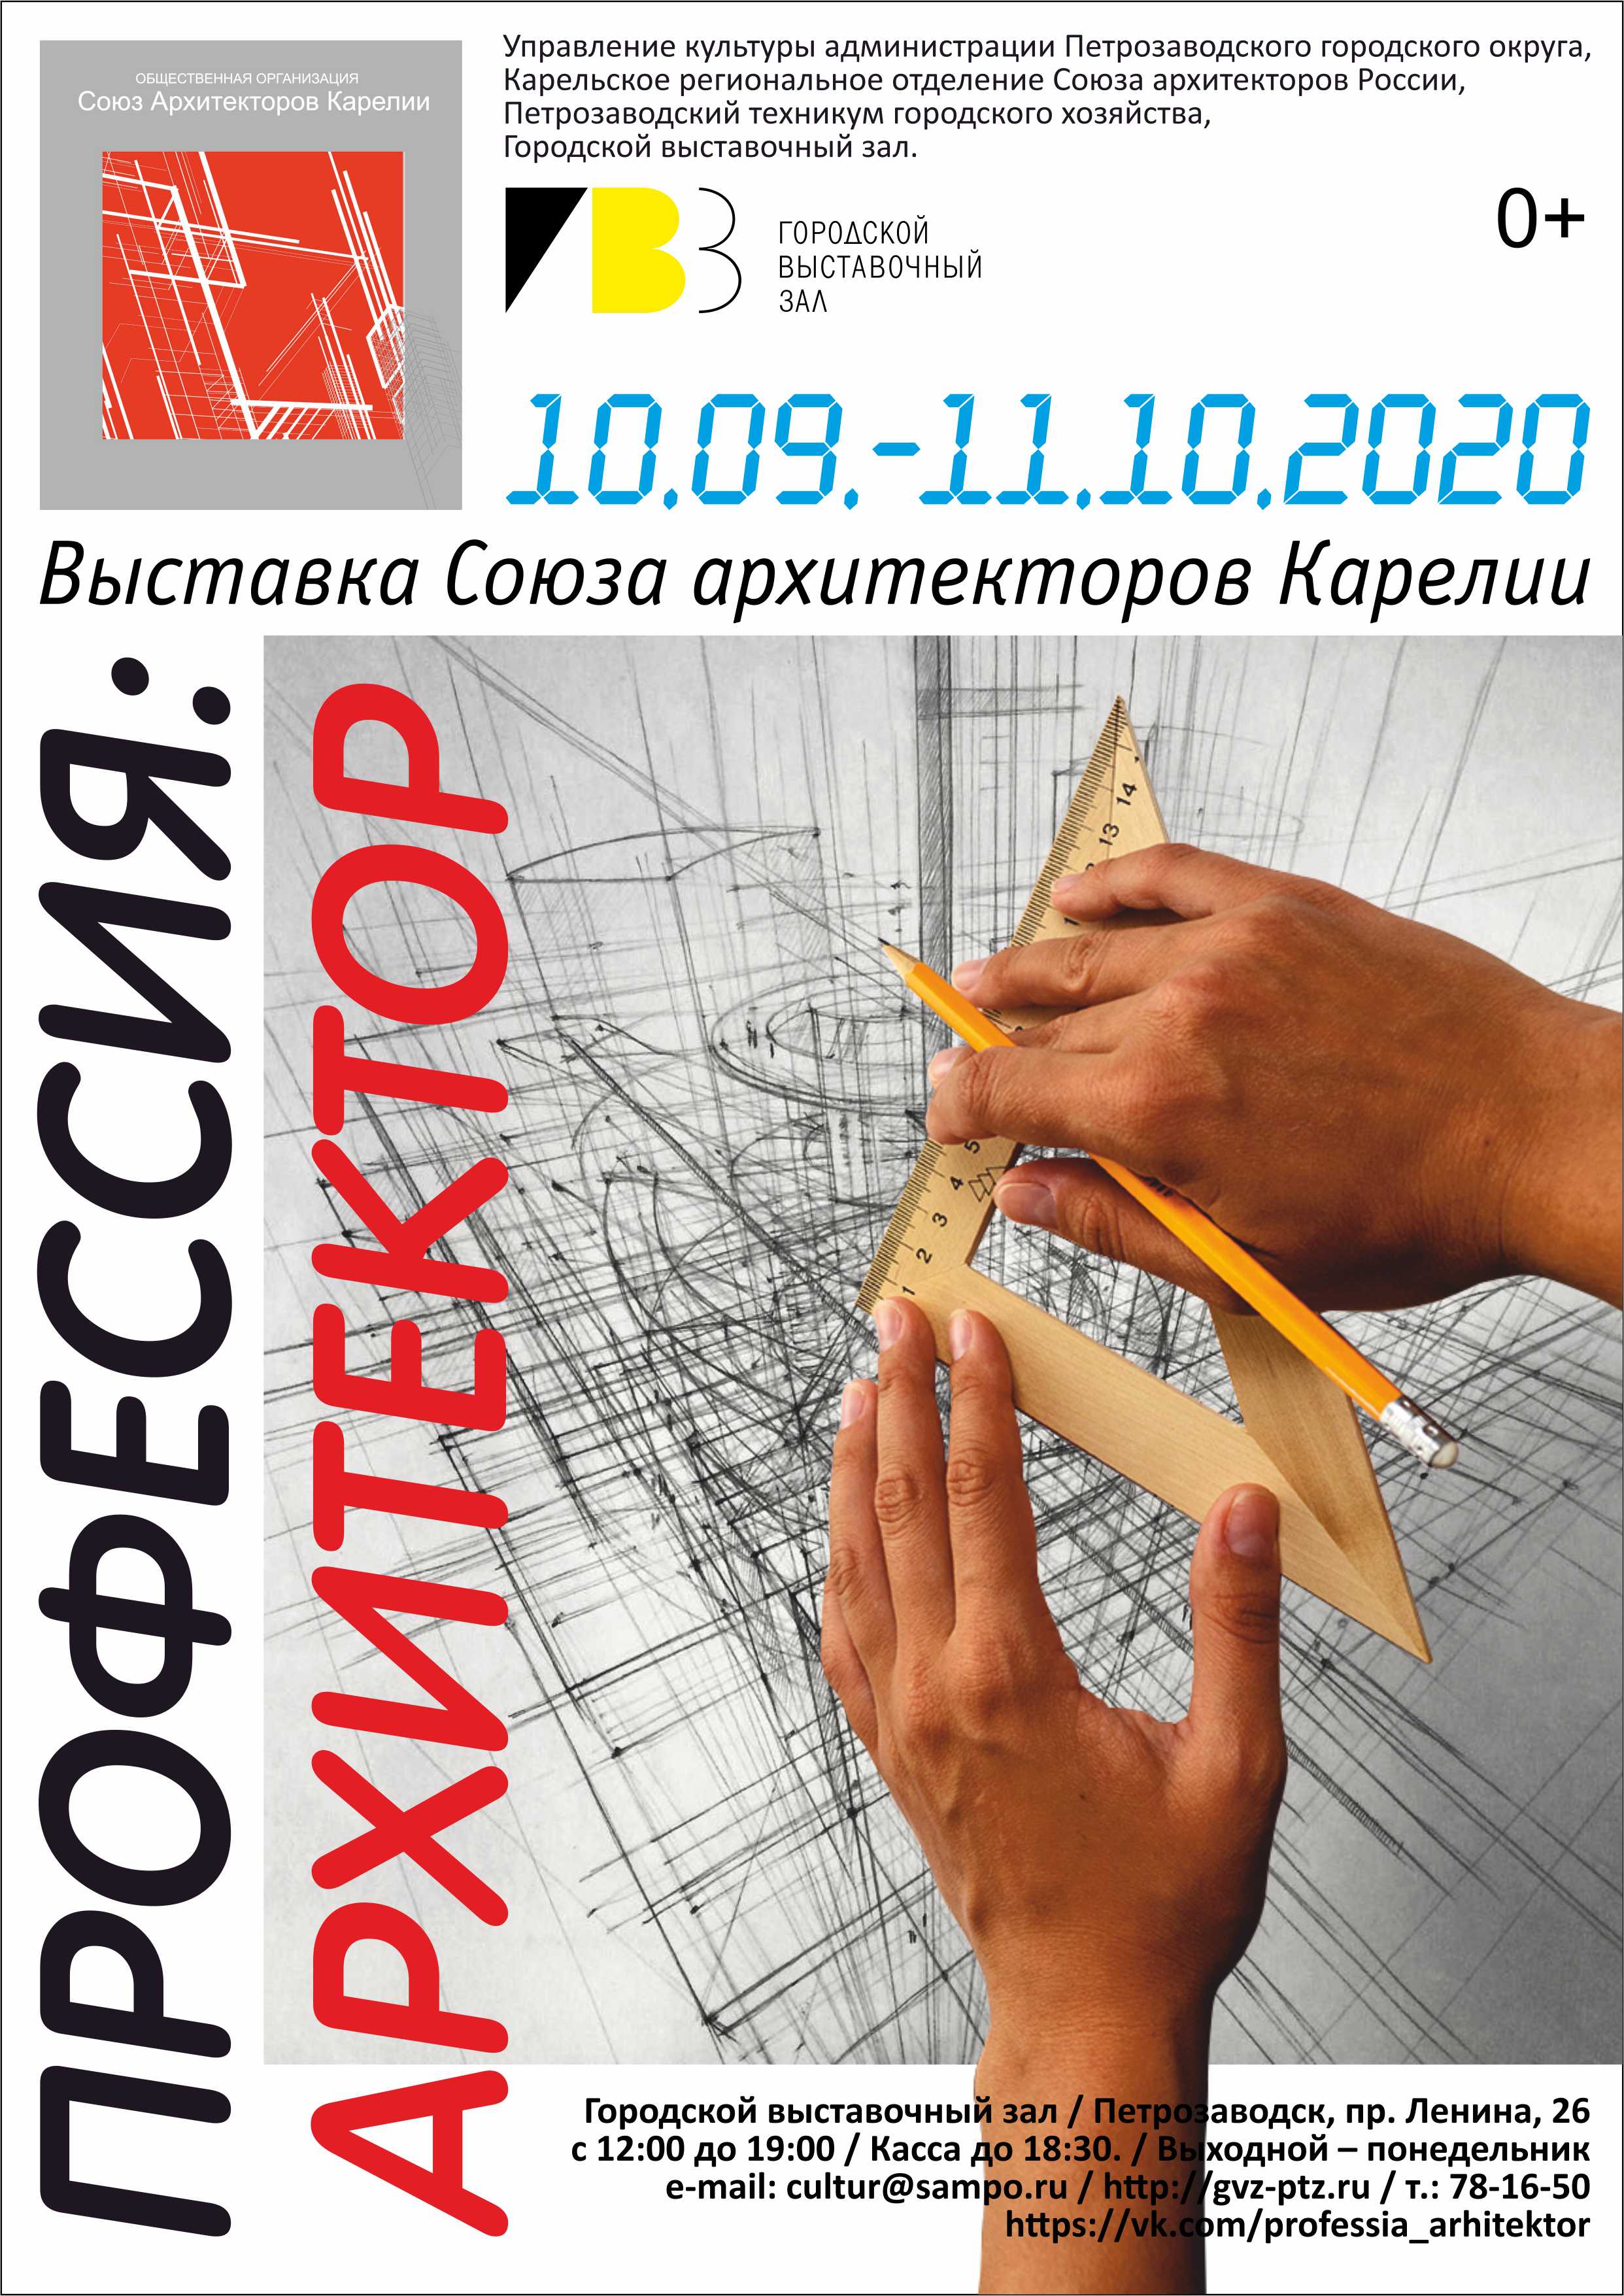 Выставка Союза архитекторов Карелии «ПРОФЕССИЯ: АРХИТЕКТОР»